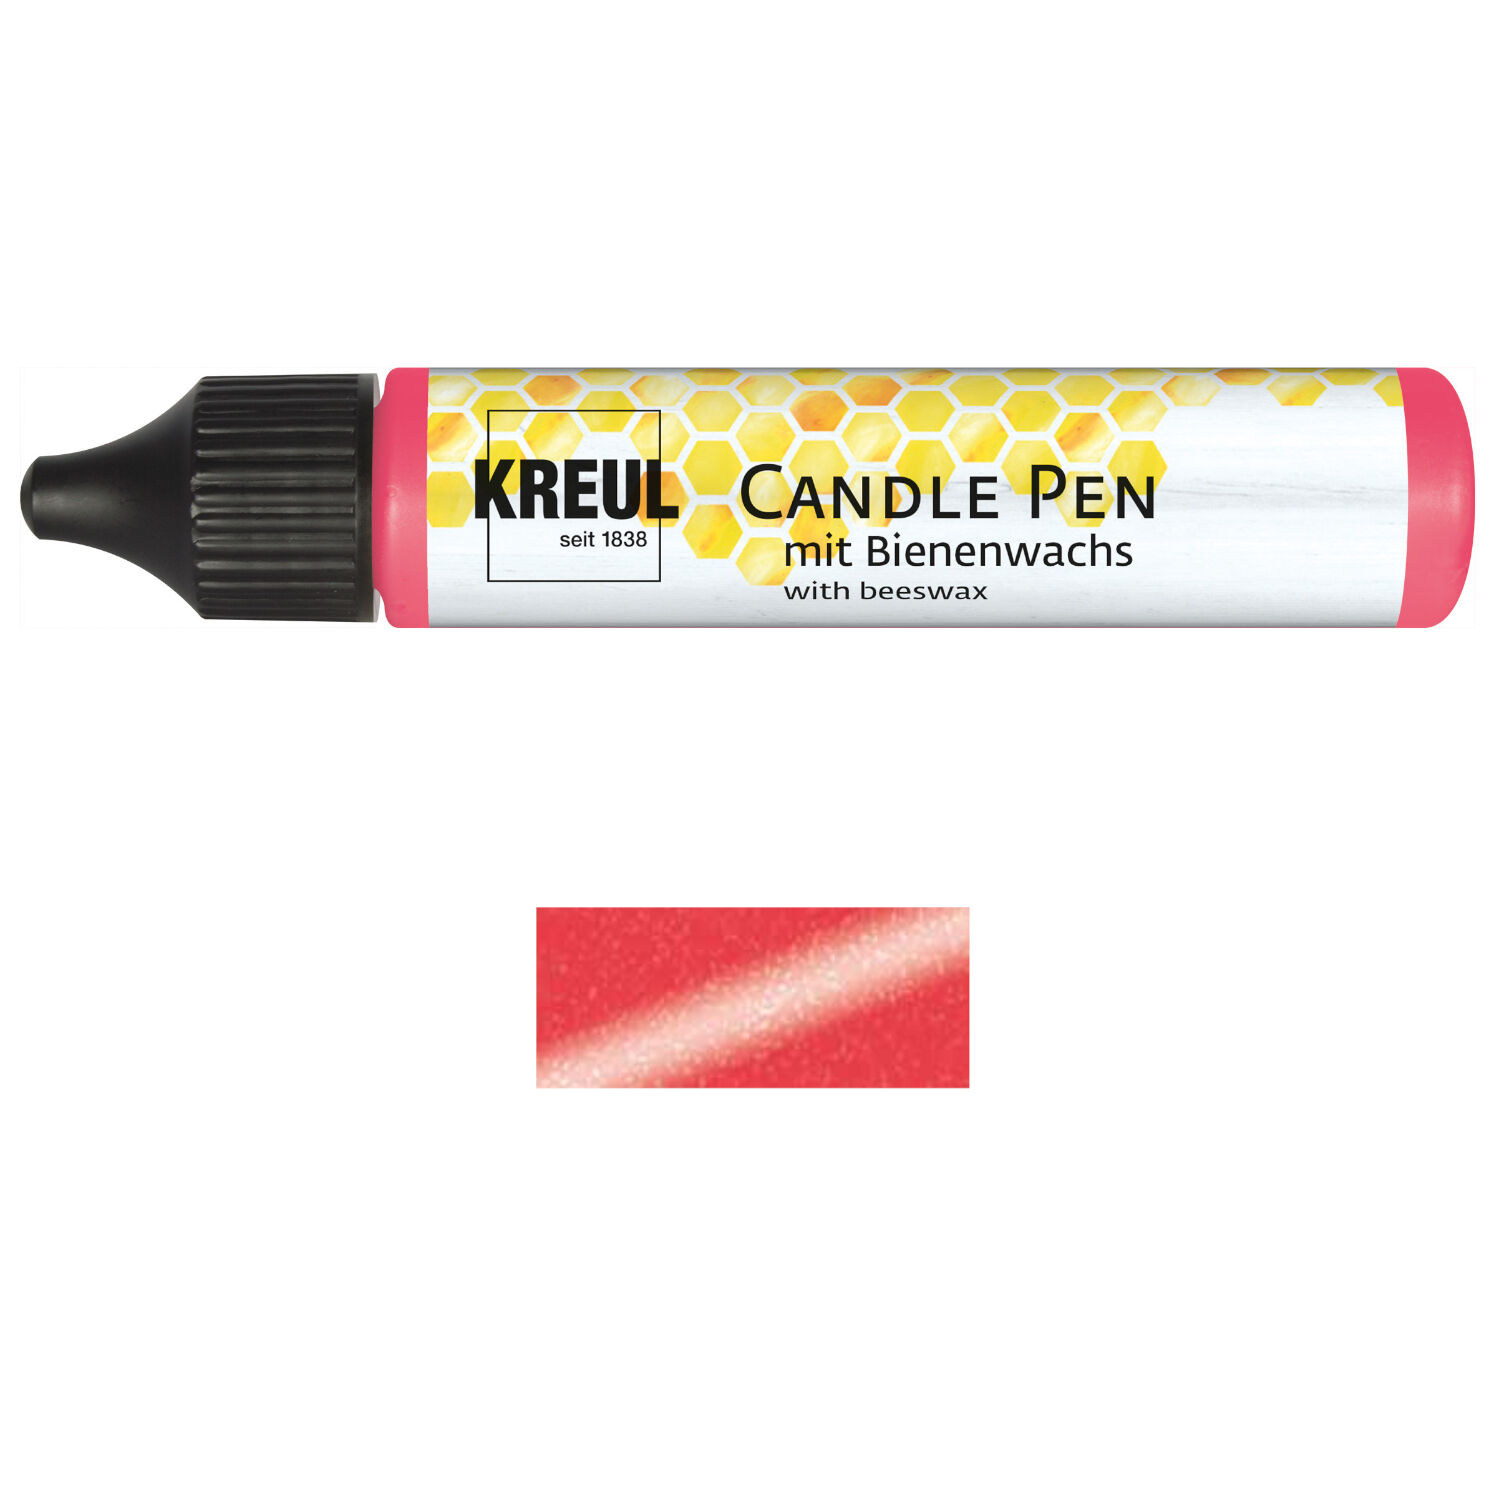 NEU KREUL Candle Pen / Kerzen-Stift, 29ml, Rot Metallic